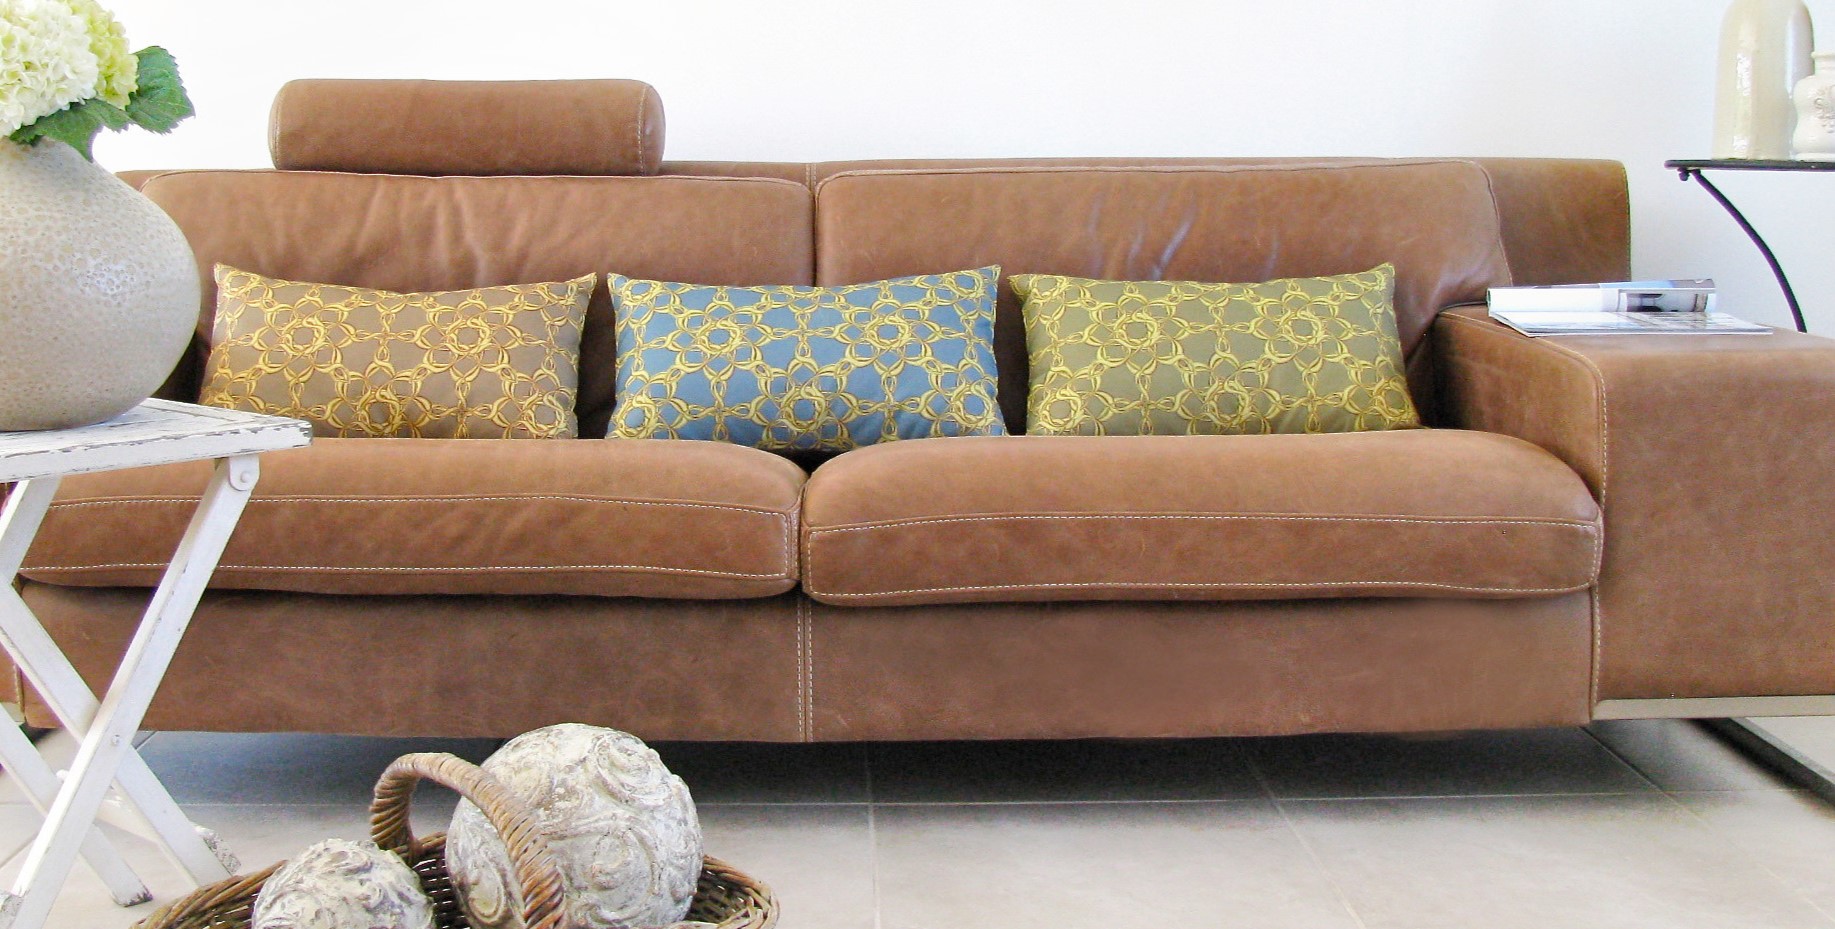 Кожаный диван прекрасно дополнит английский интерьер